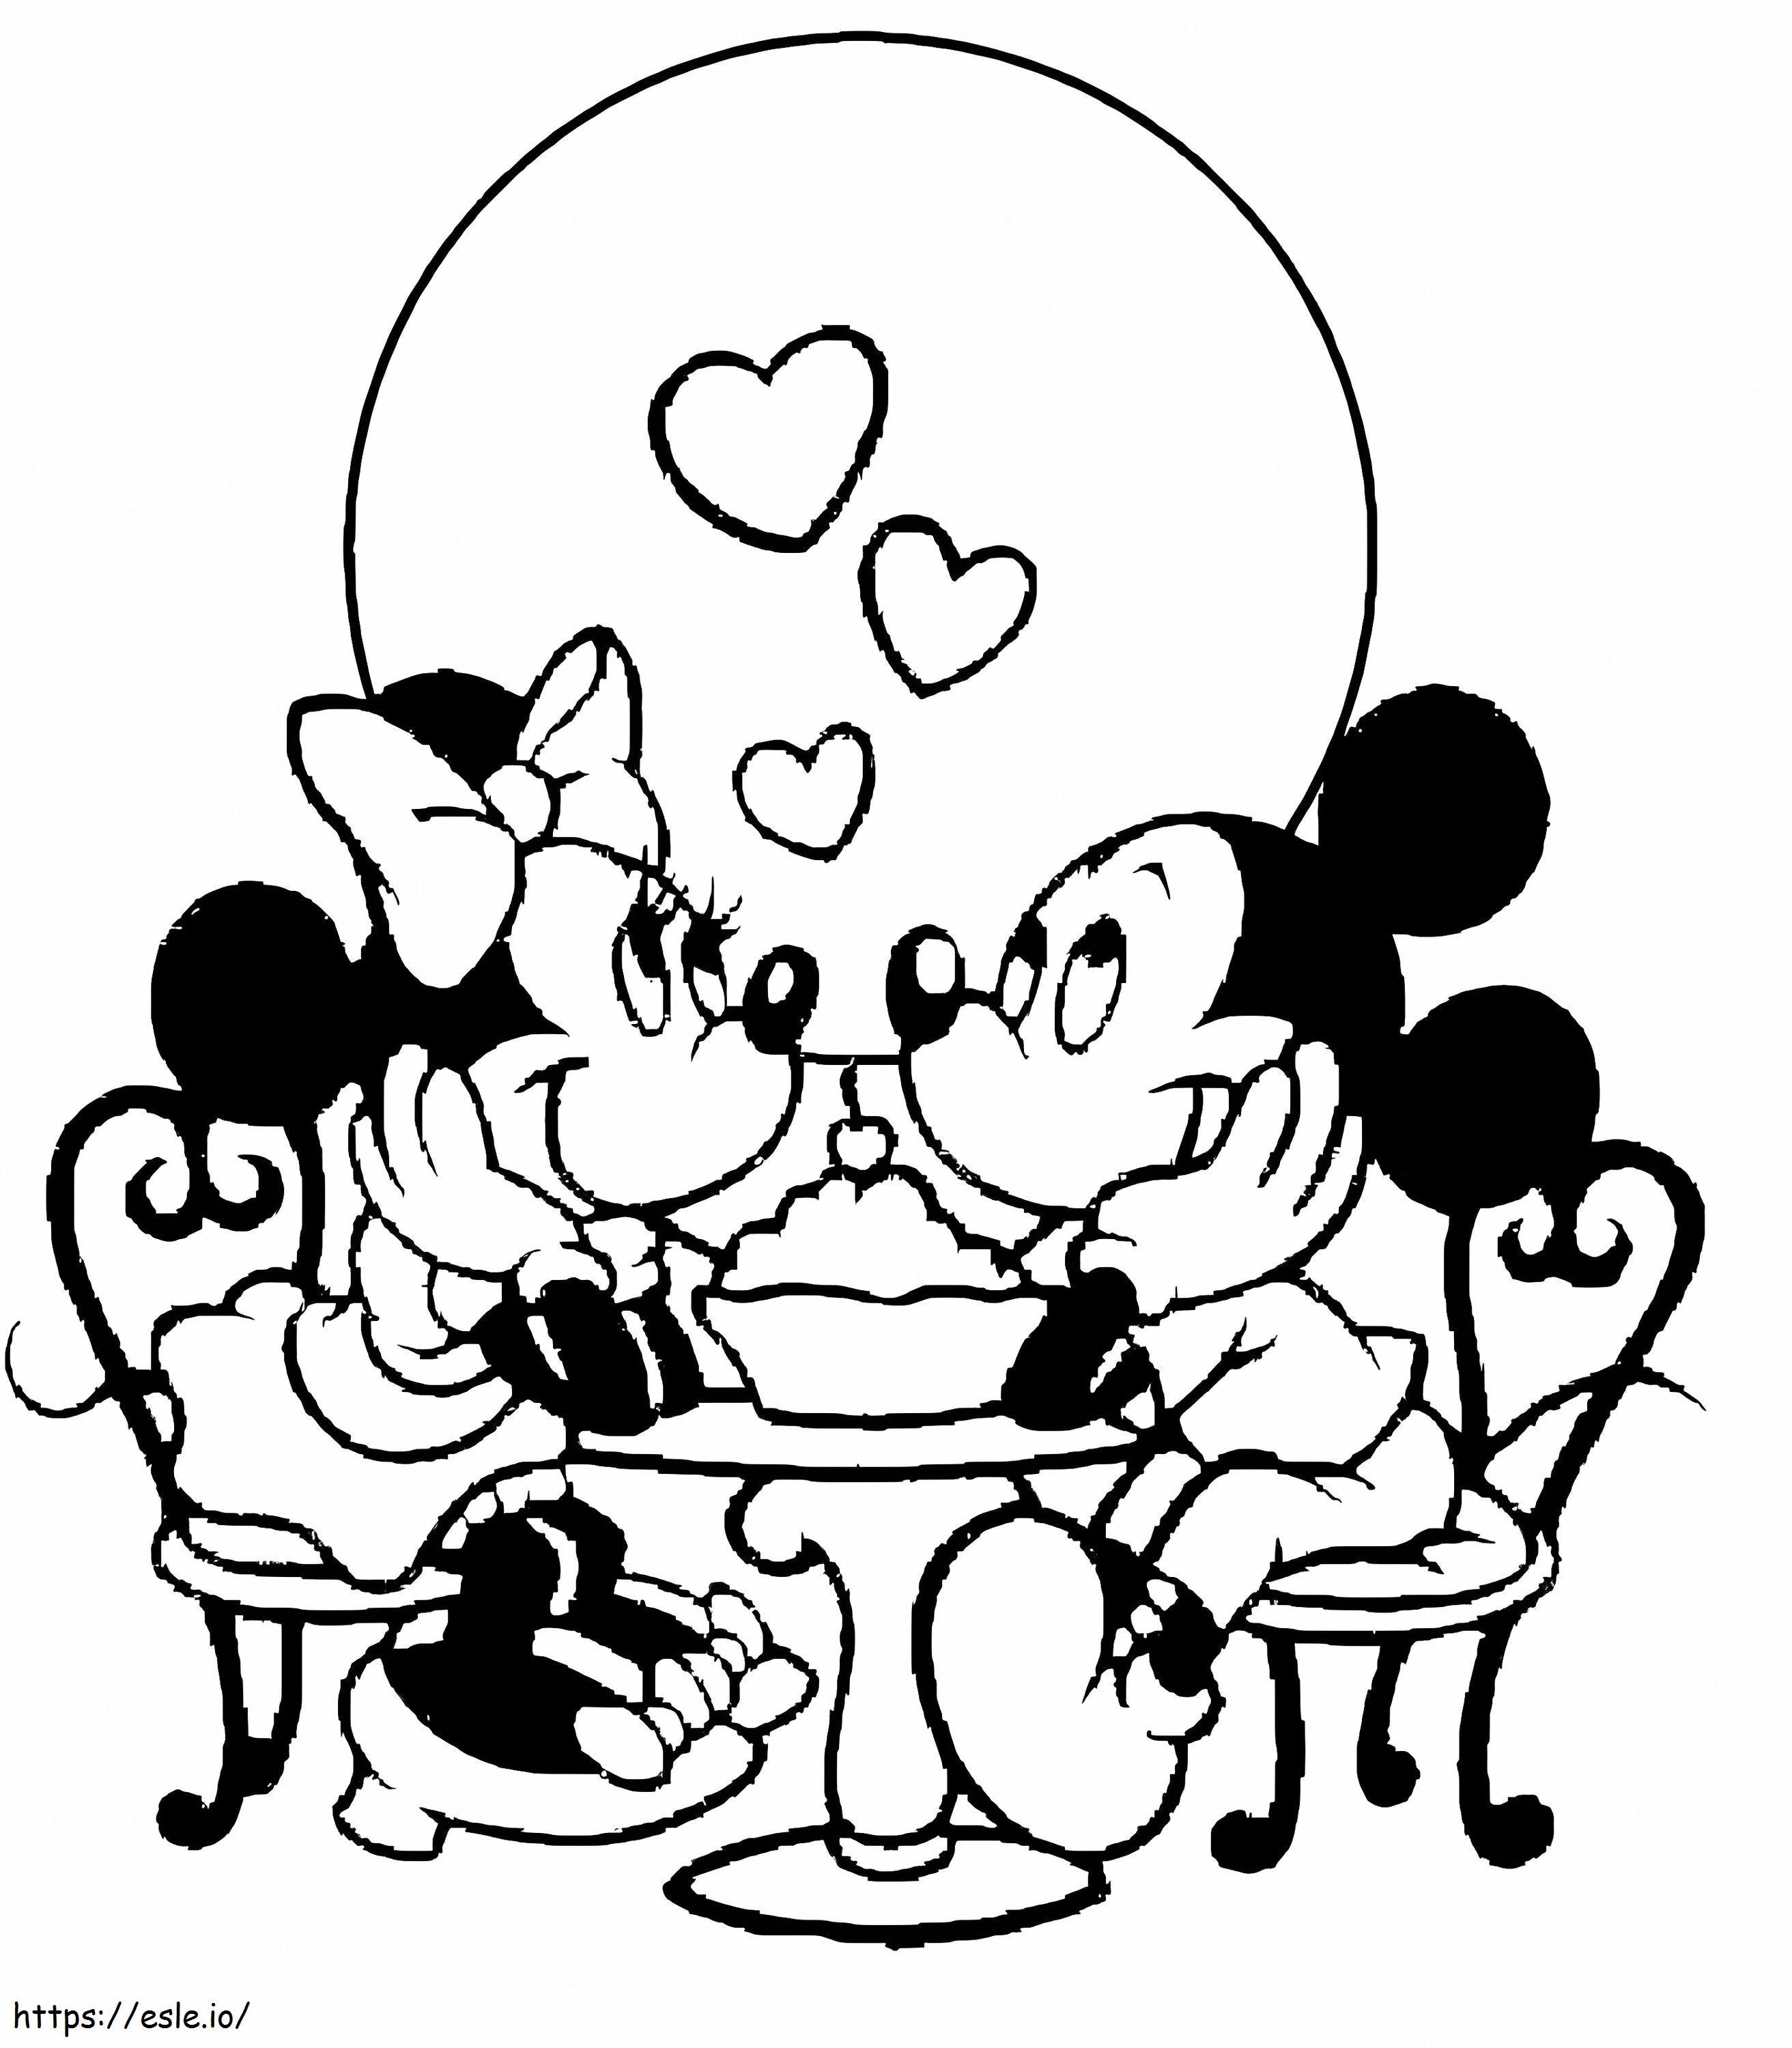 Mickey y Minnie enamorados para colorear